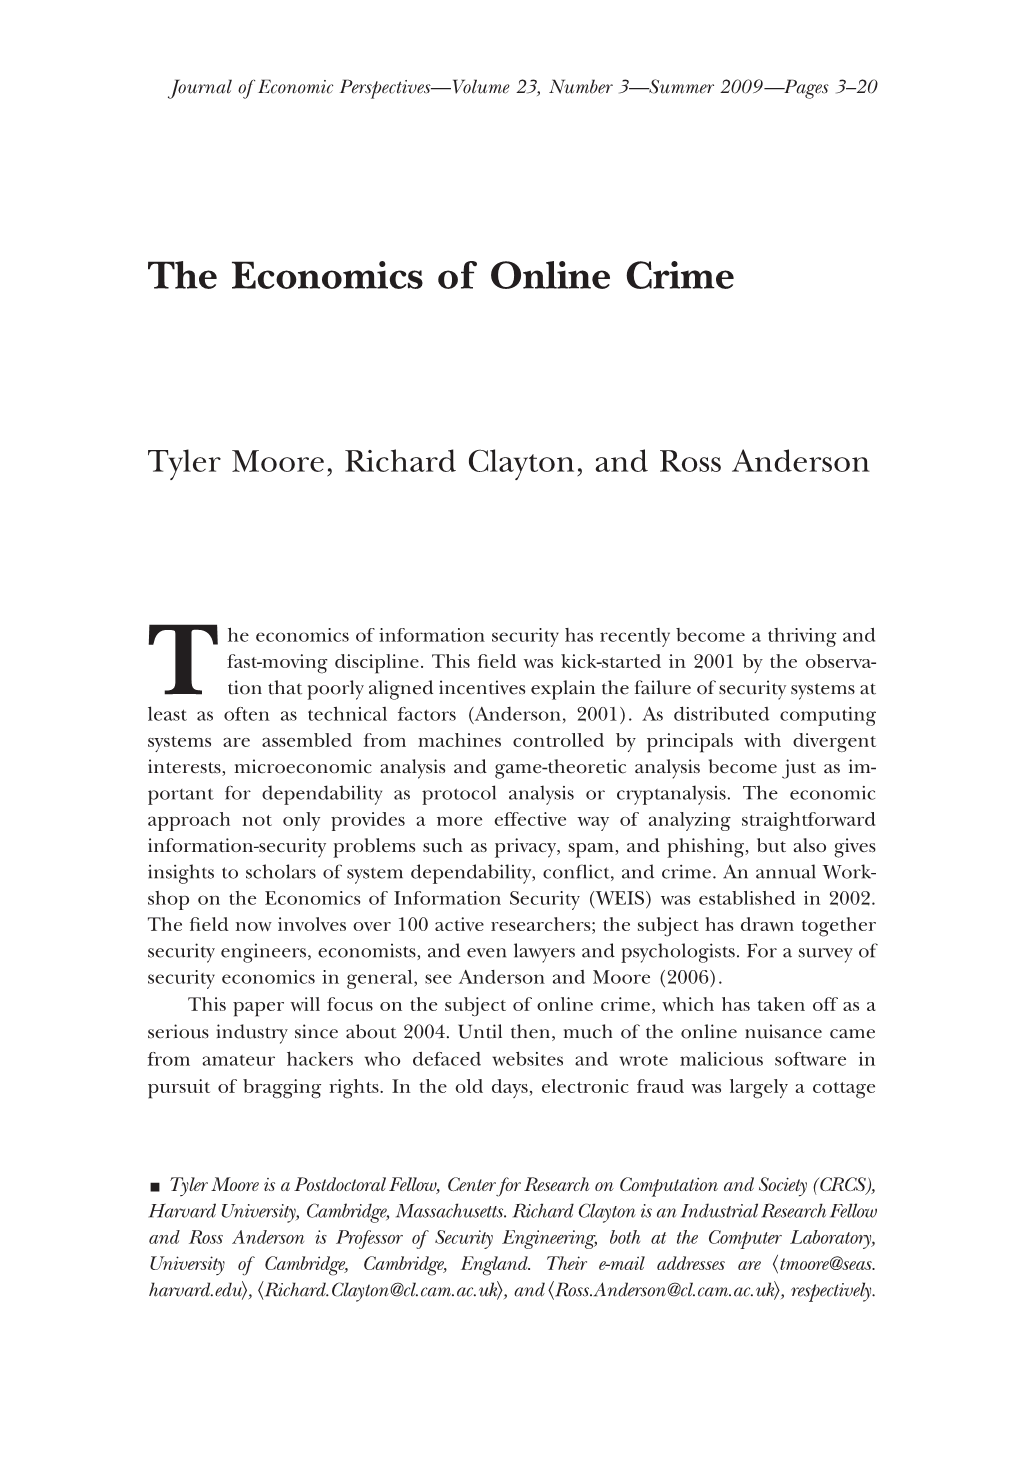 The Economics of Online Crime